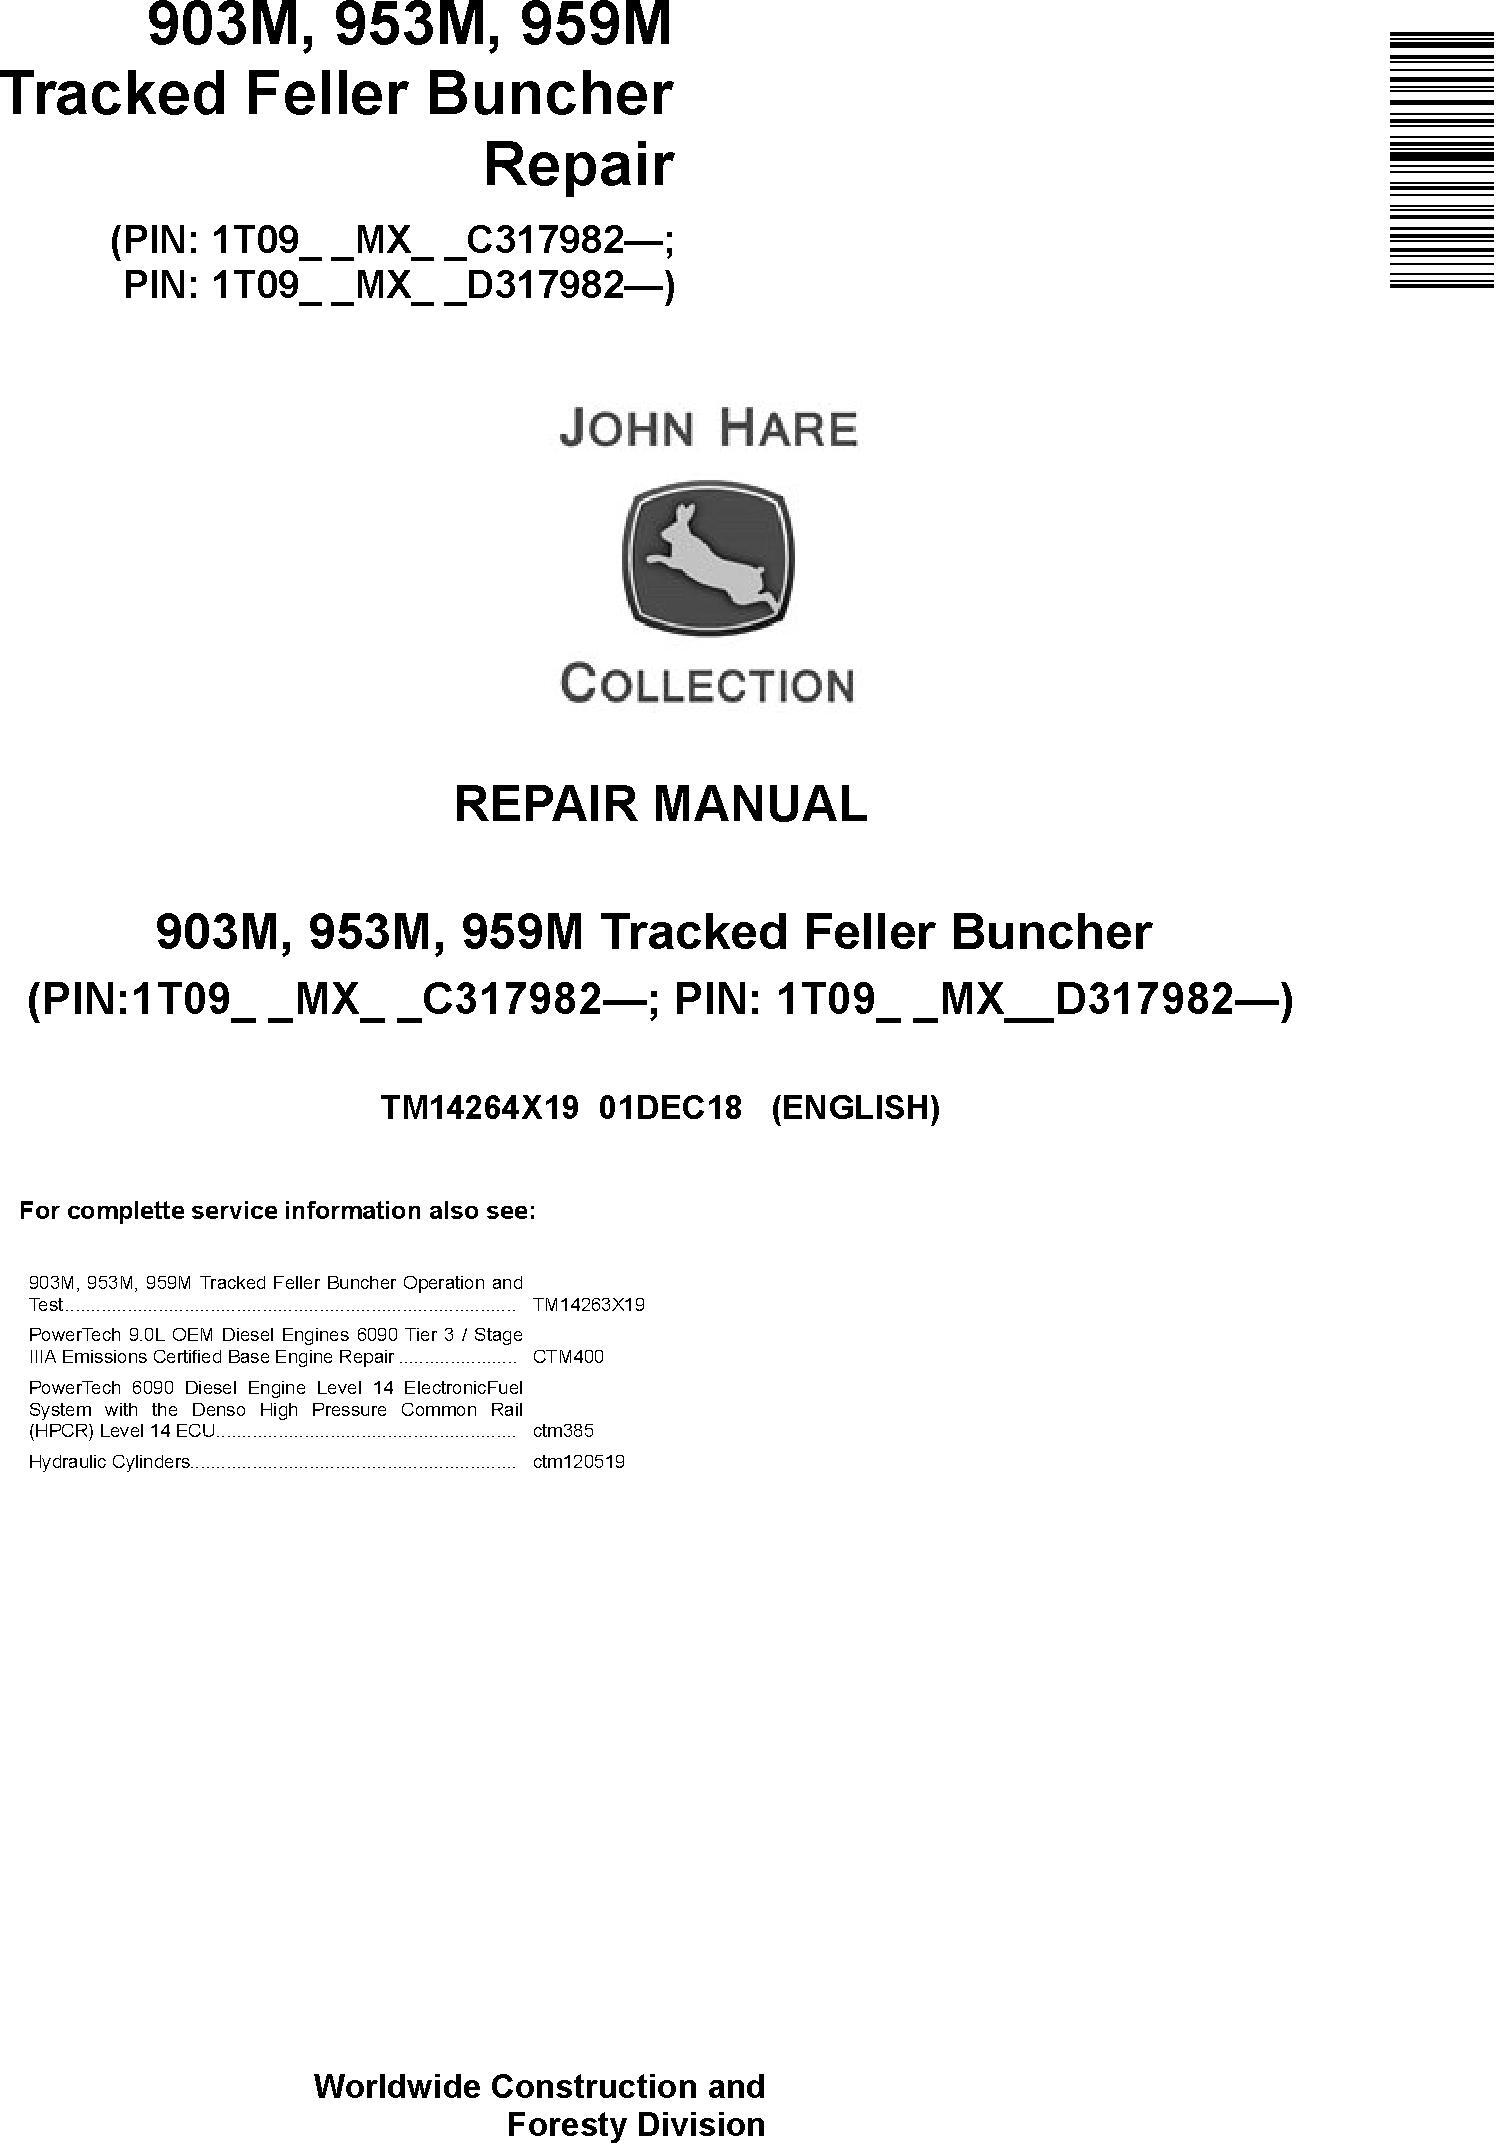 John Deere 903M, 953M, 959M (SN.C317982-,D317982-) Tracked Feller Buncher Repair Manual (TM14264X19)